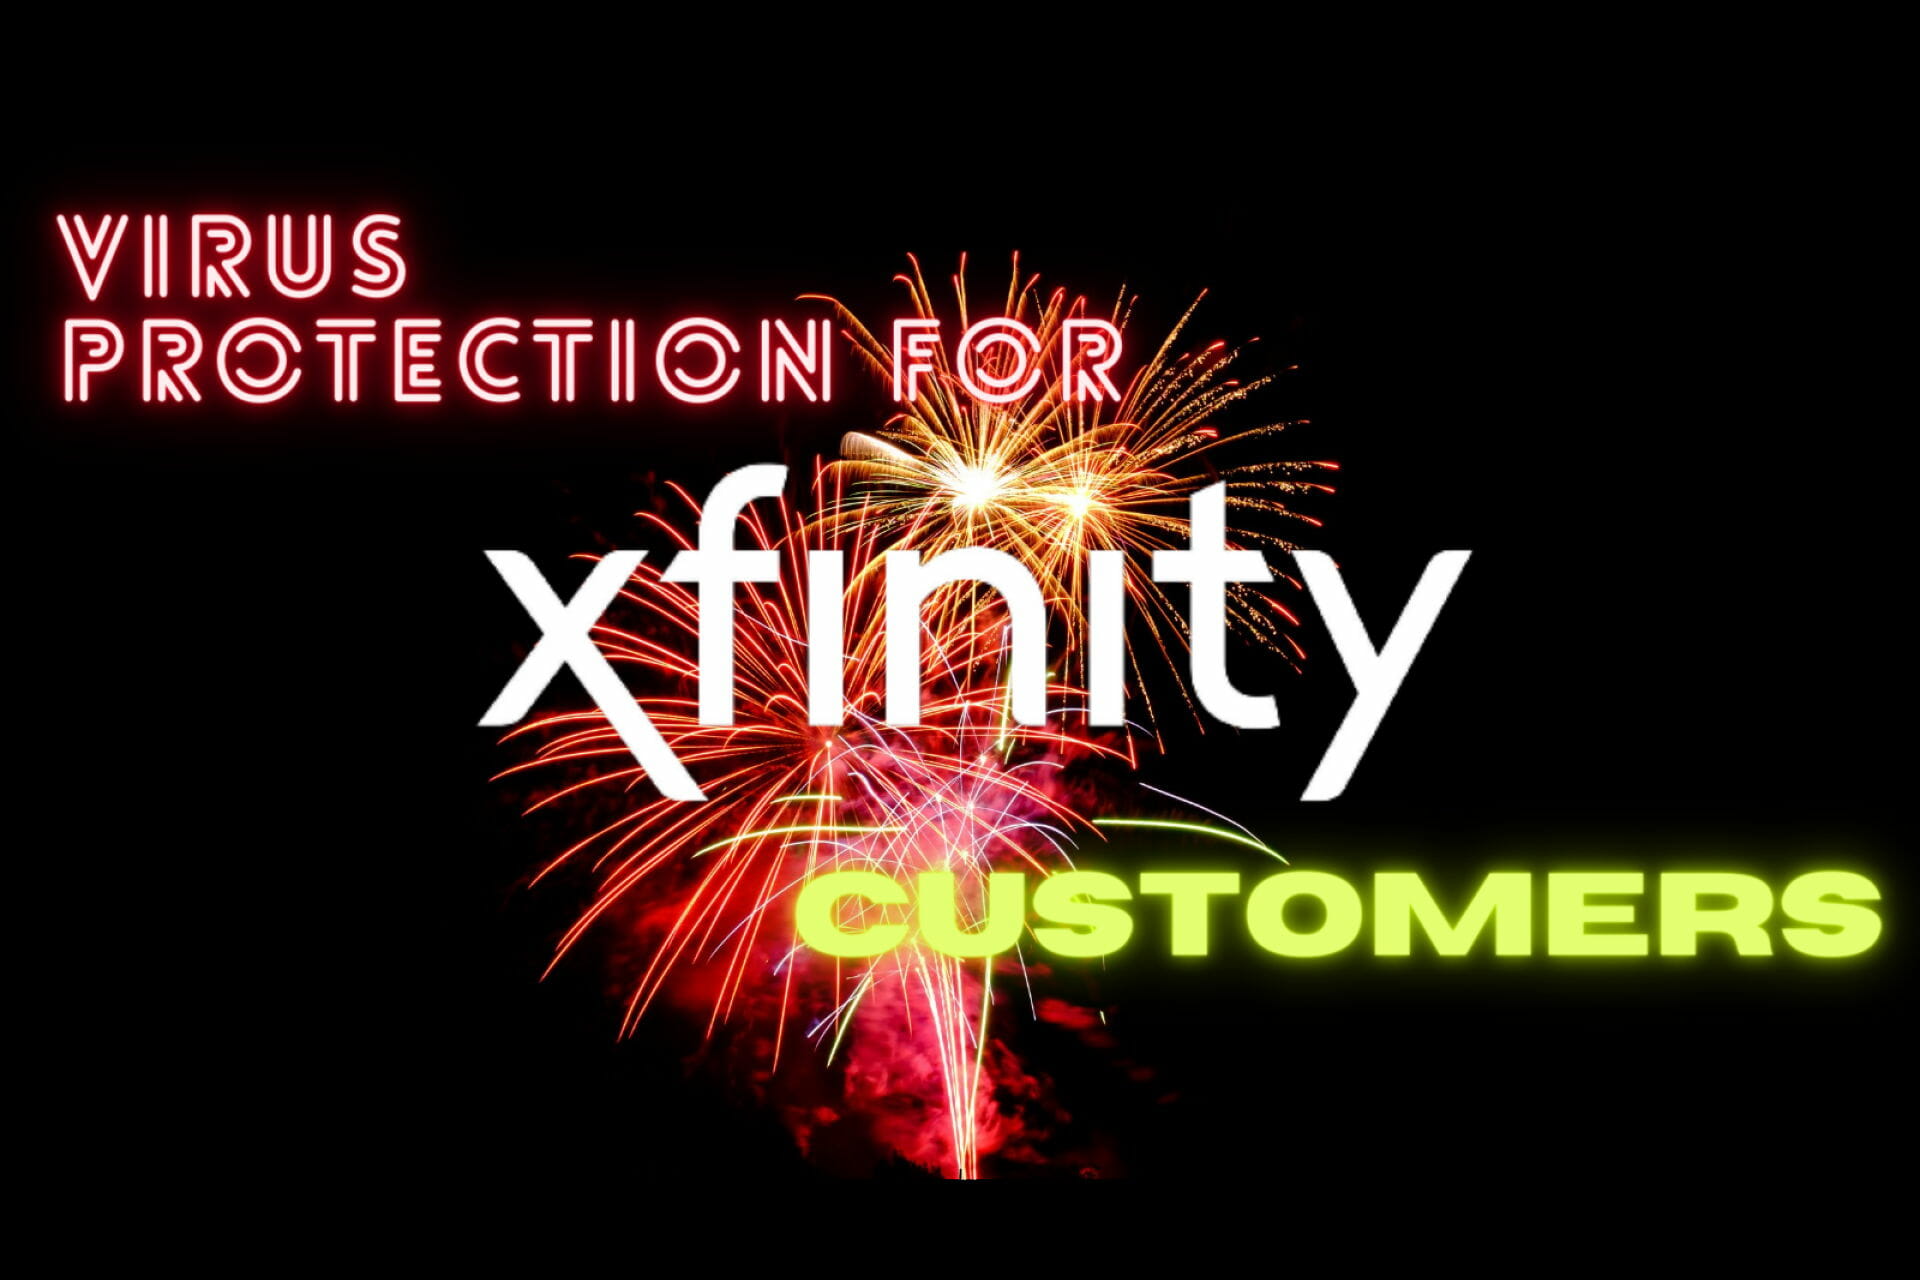 Como faço para obter o Xfinity Antivirus?